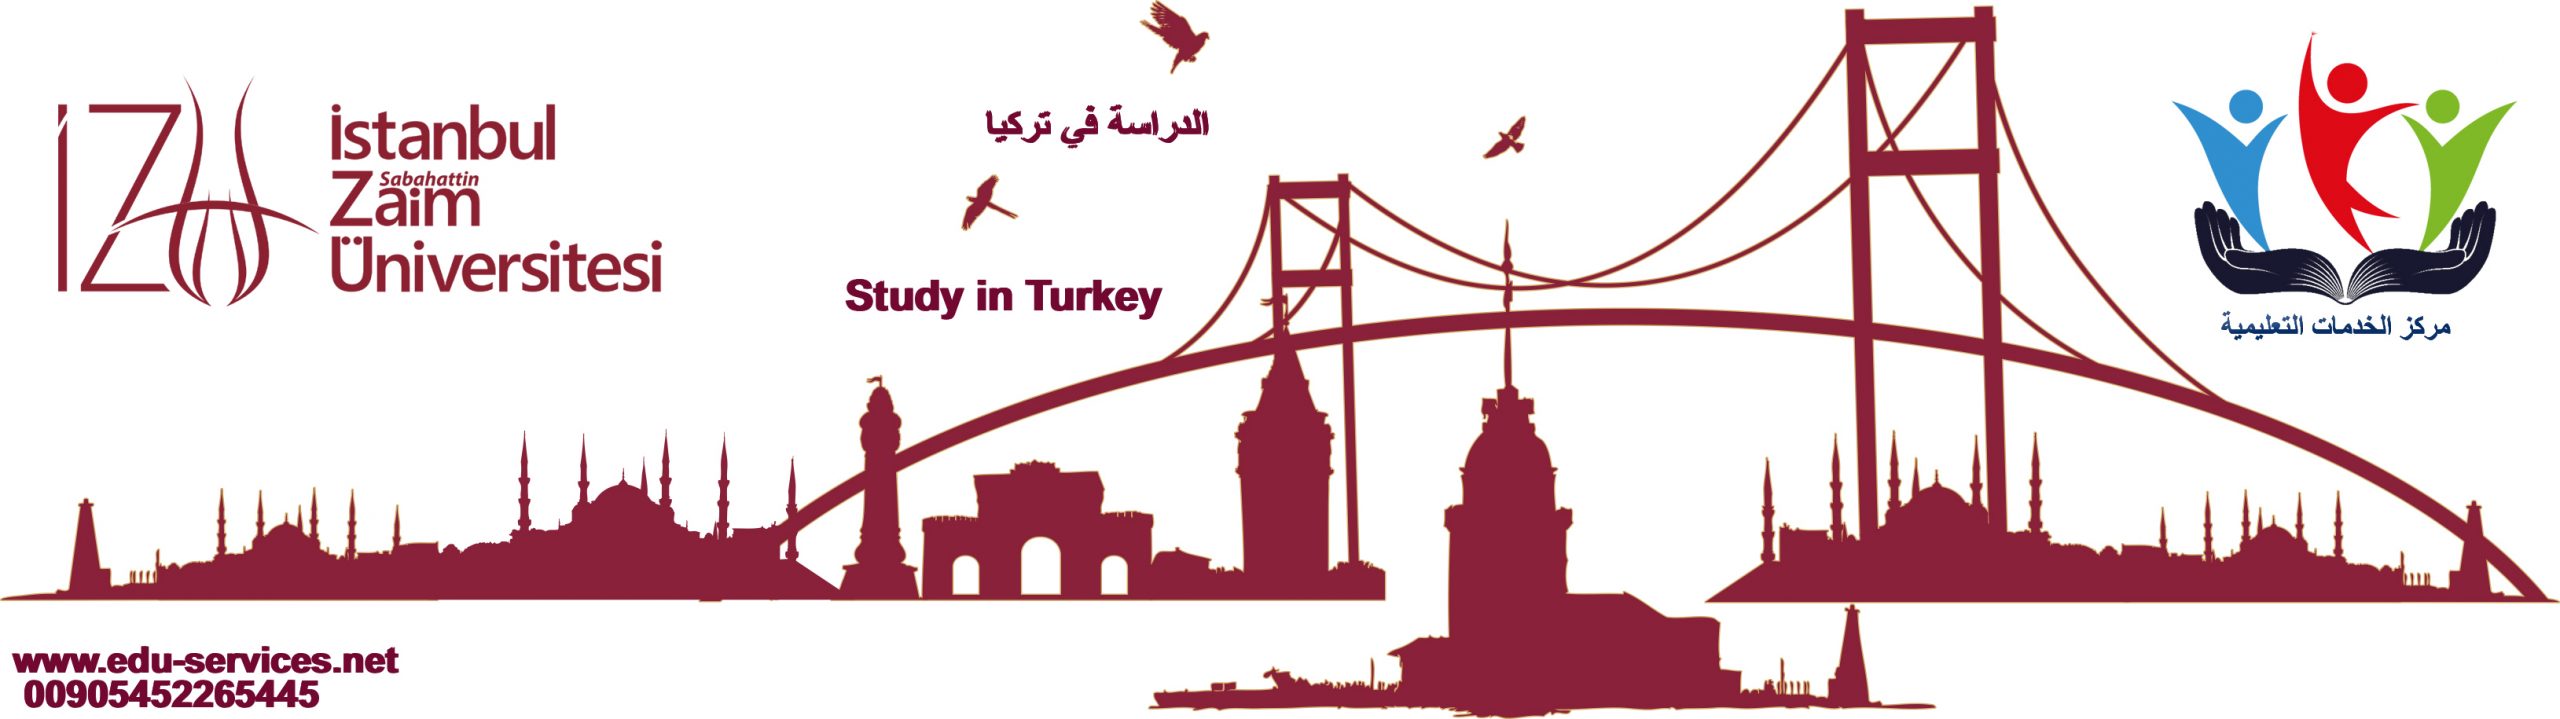 الدراسة في تركيا-جامعة اسطنبول صباح الدين زعيم